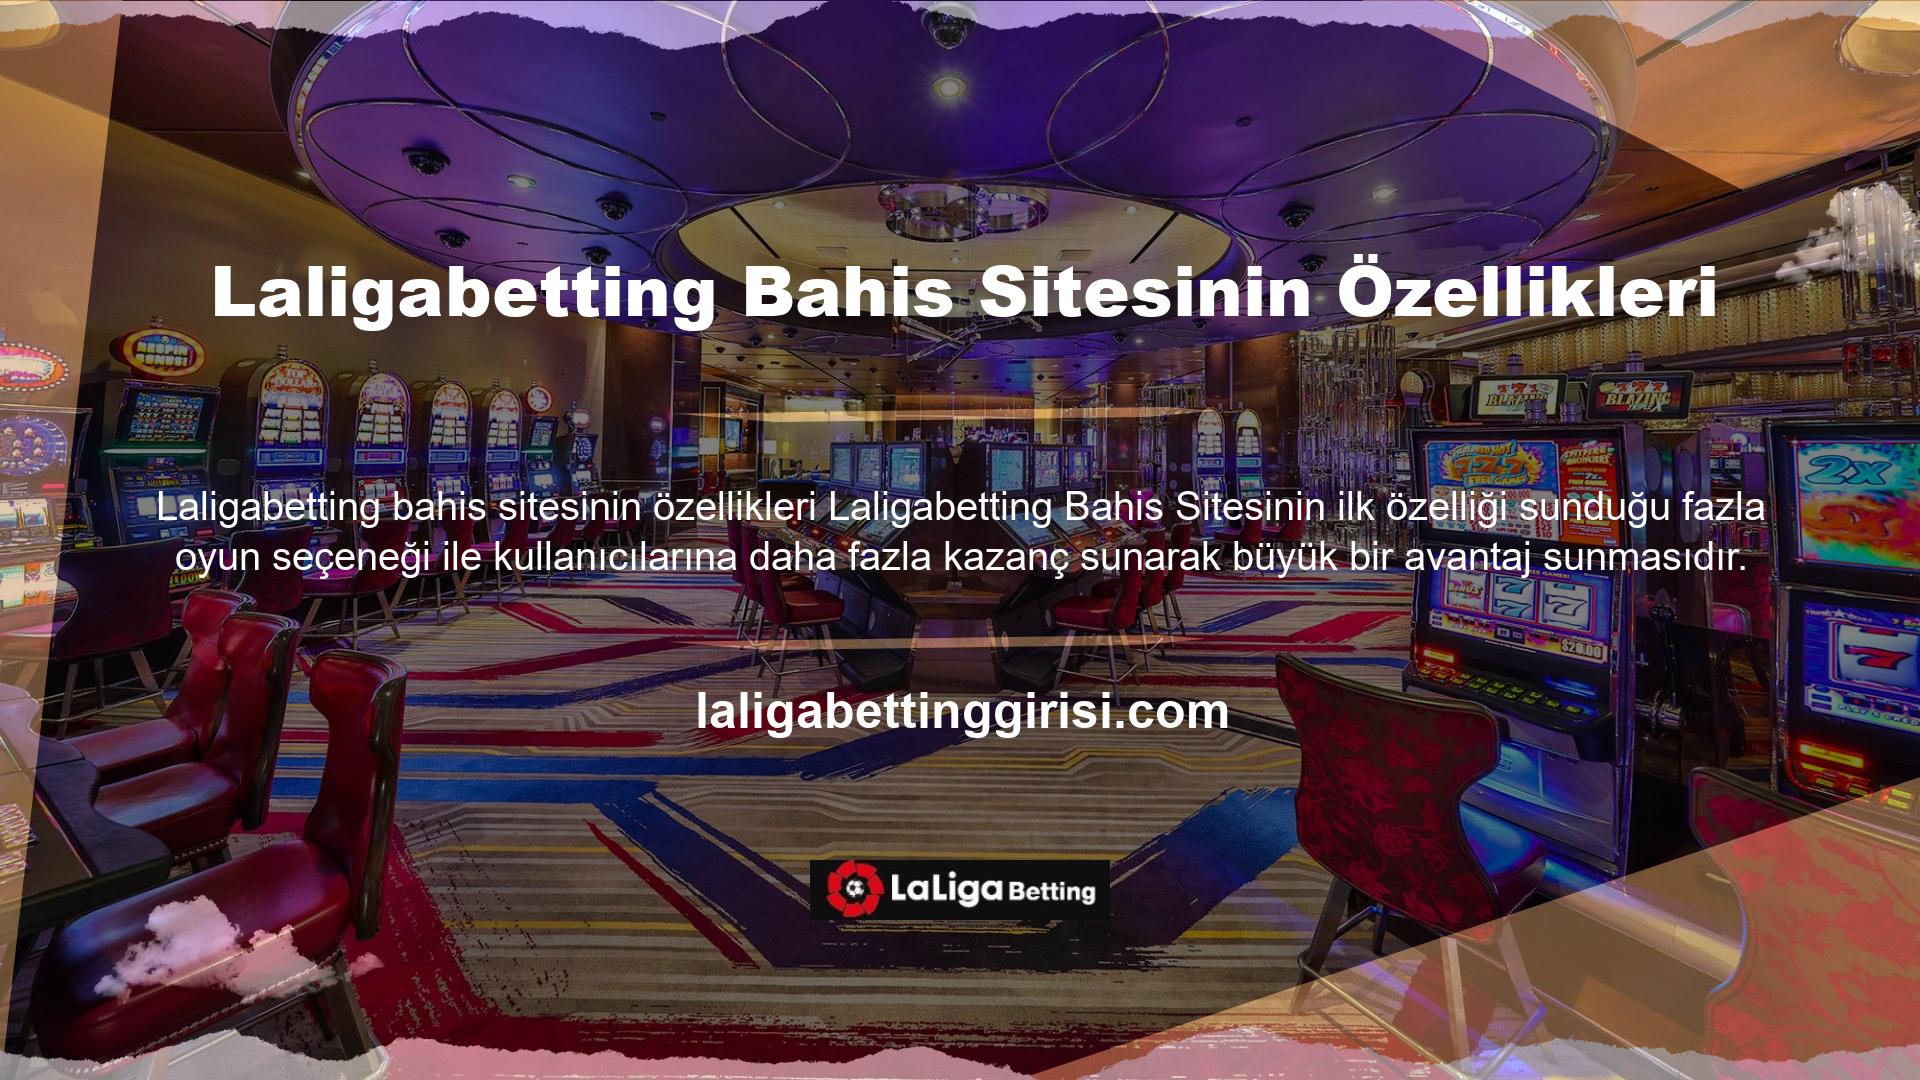 Laligabetting web sitesi aynı zamanda her gün ücretsiz bahis oynama imkanı da sunmaktadır